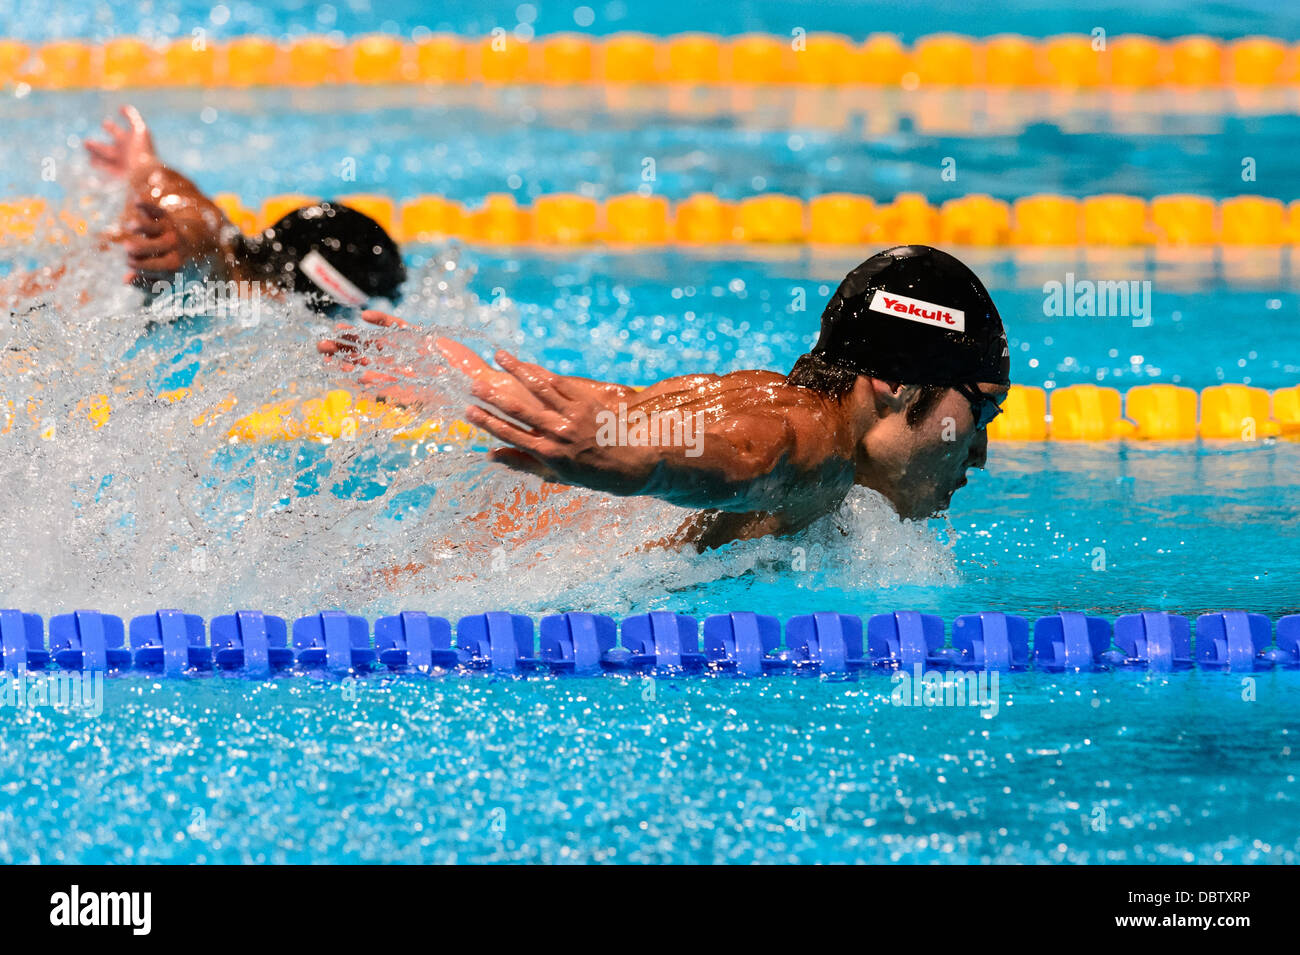 Barcelone, Espagne. Août 4th, 2013 : le Japonais Kosuke Hagino en compétition dans l'épreuve du 400m quatre nages individuel à la 15e finale des Championnats du Monde FINA à Barcelone. Credit : matthi/Alamy Live News Banque D'Images